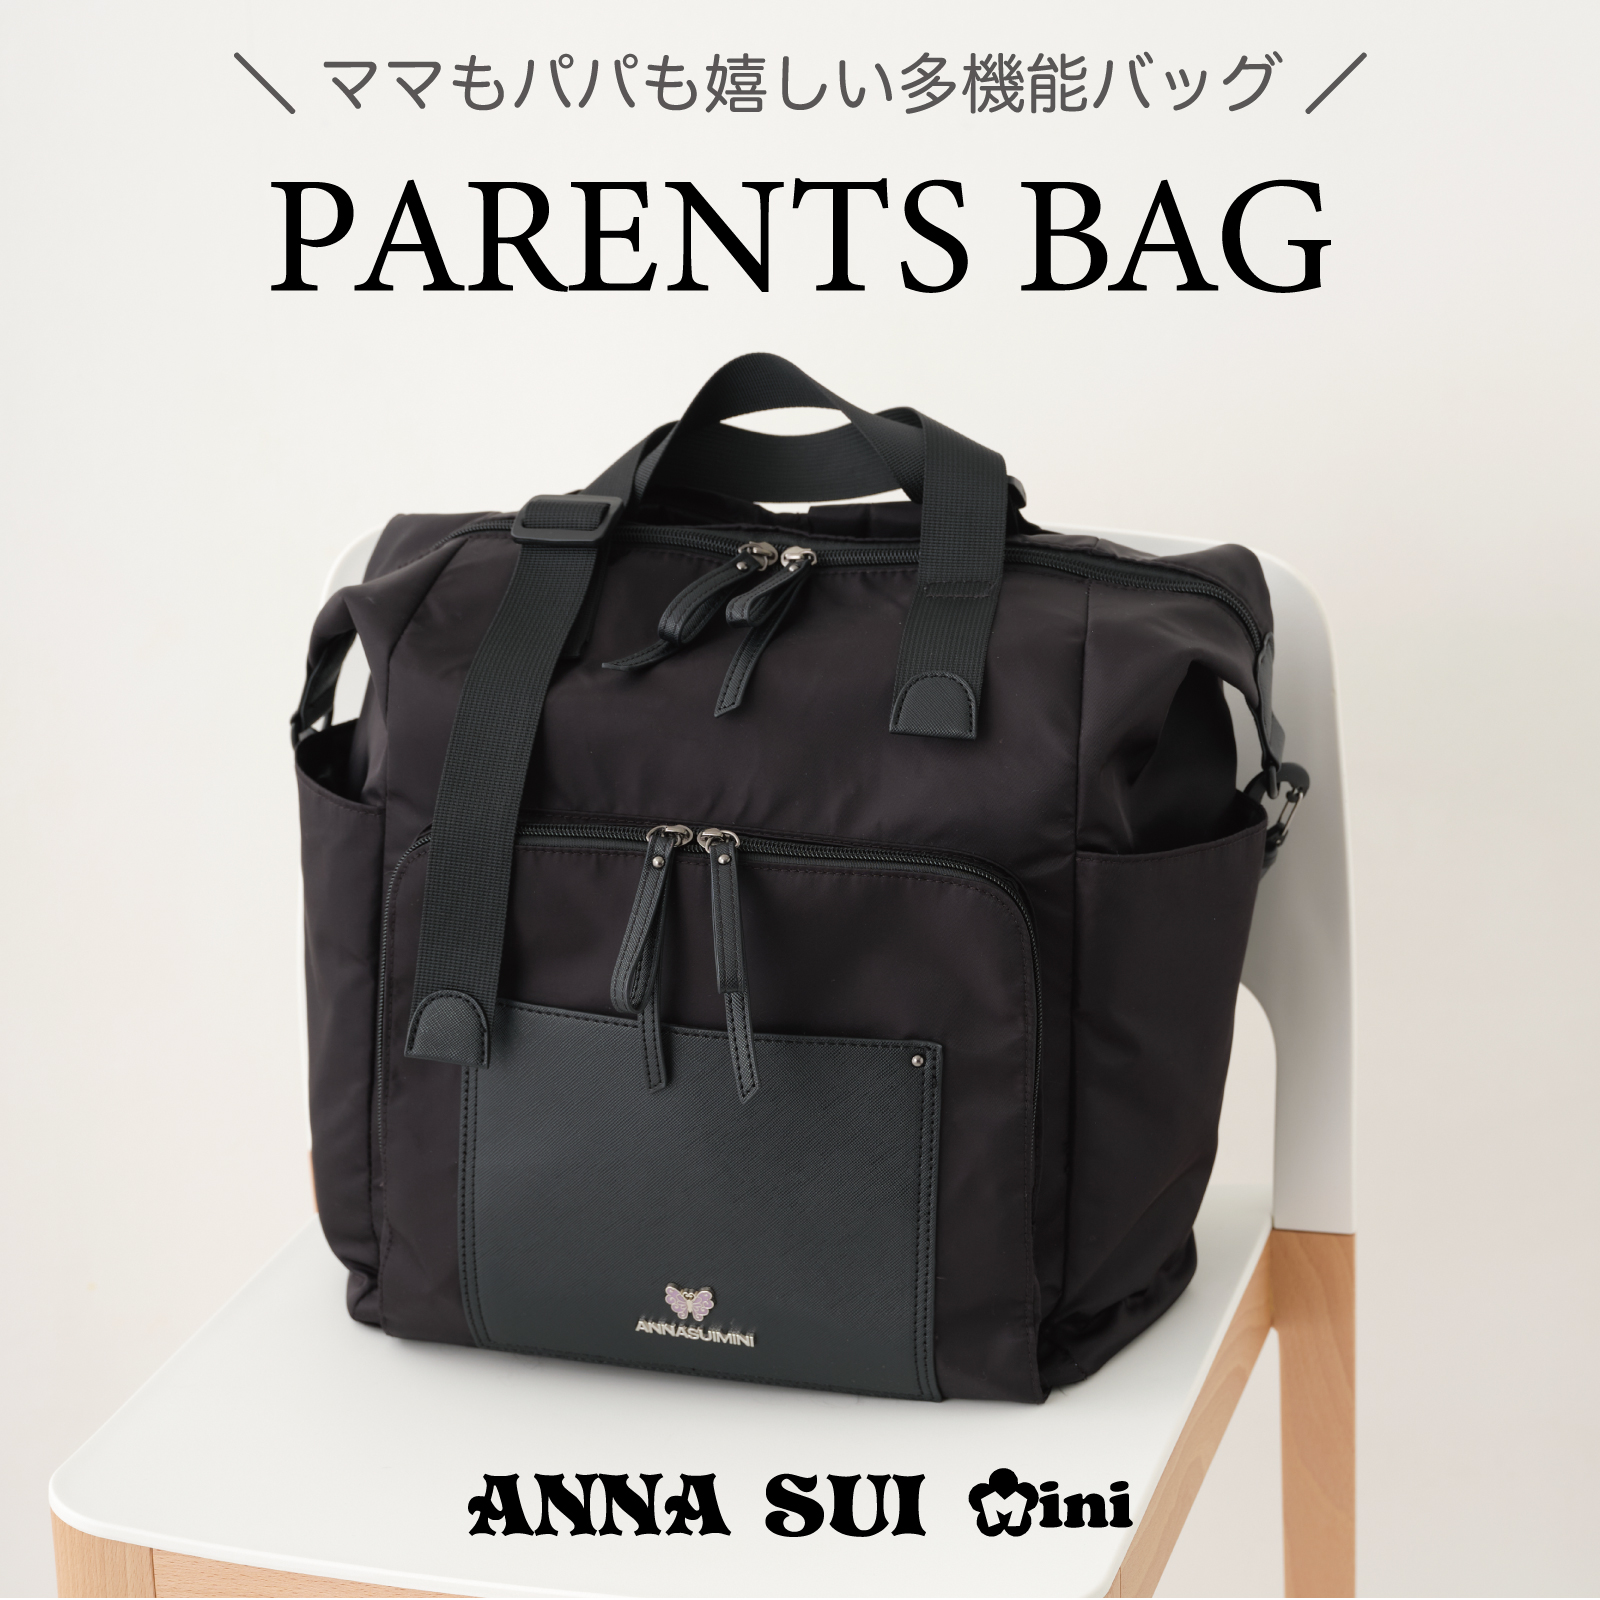 ANNA SUI miniから
新たなペアレンツバッグ(マザーズバッグ)が新登場。